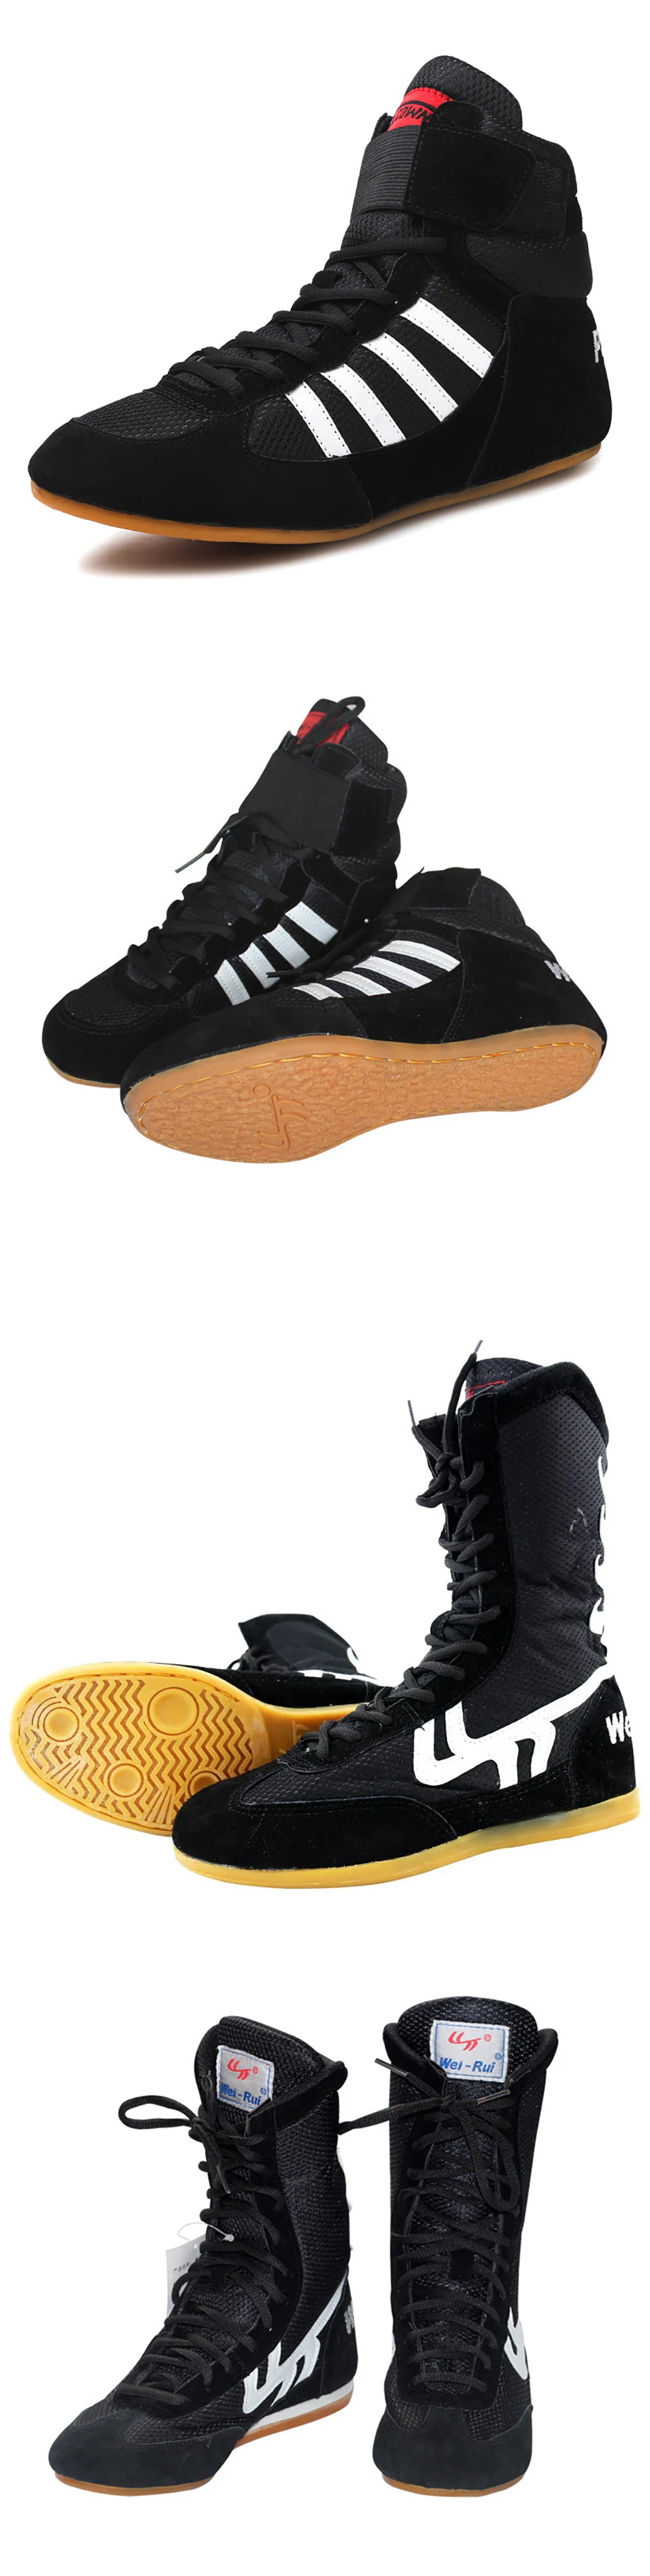 USHINE/Профессиональная мужская обувь; боксерки для борьбы; дышащая профессиональная экипировка для борьбы с боевыми тренировками; тренировочная обувь; большие размеры